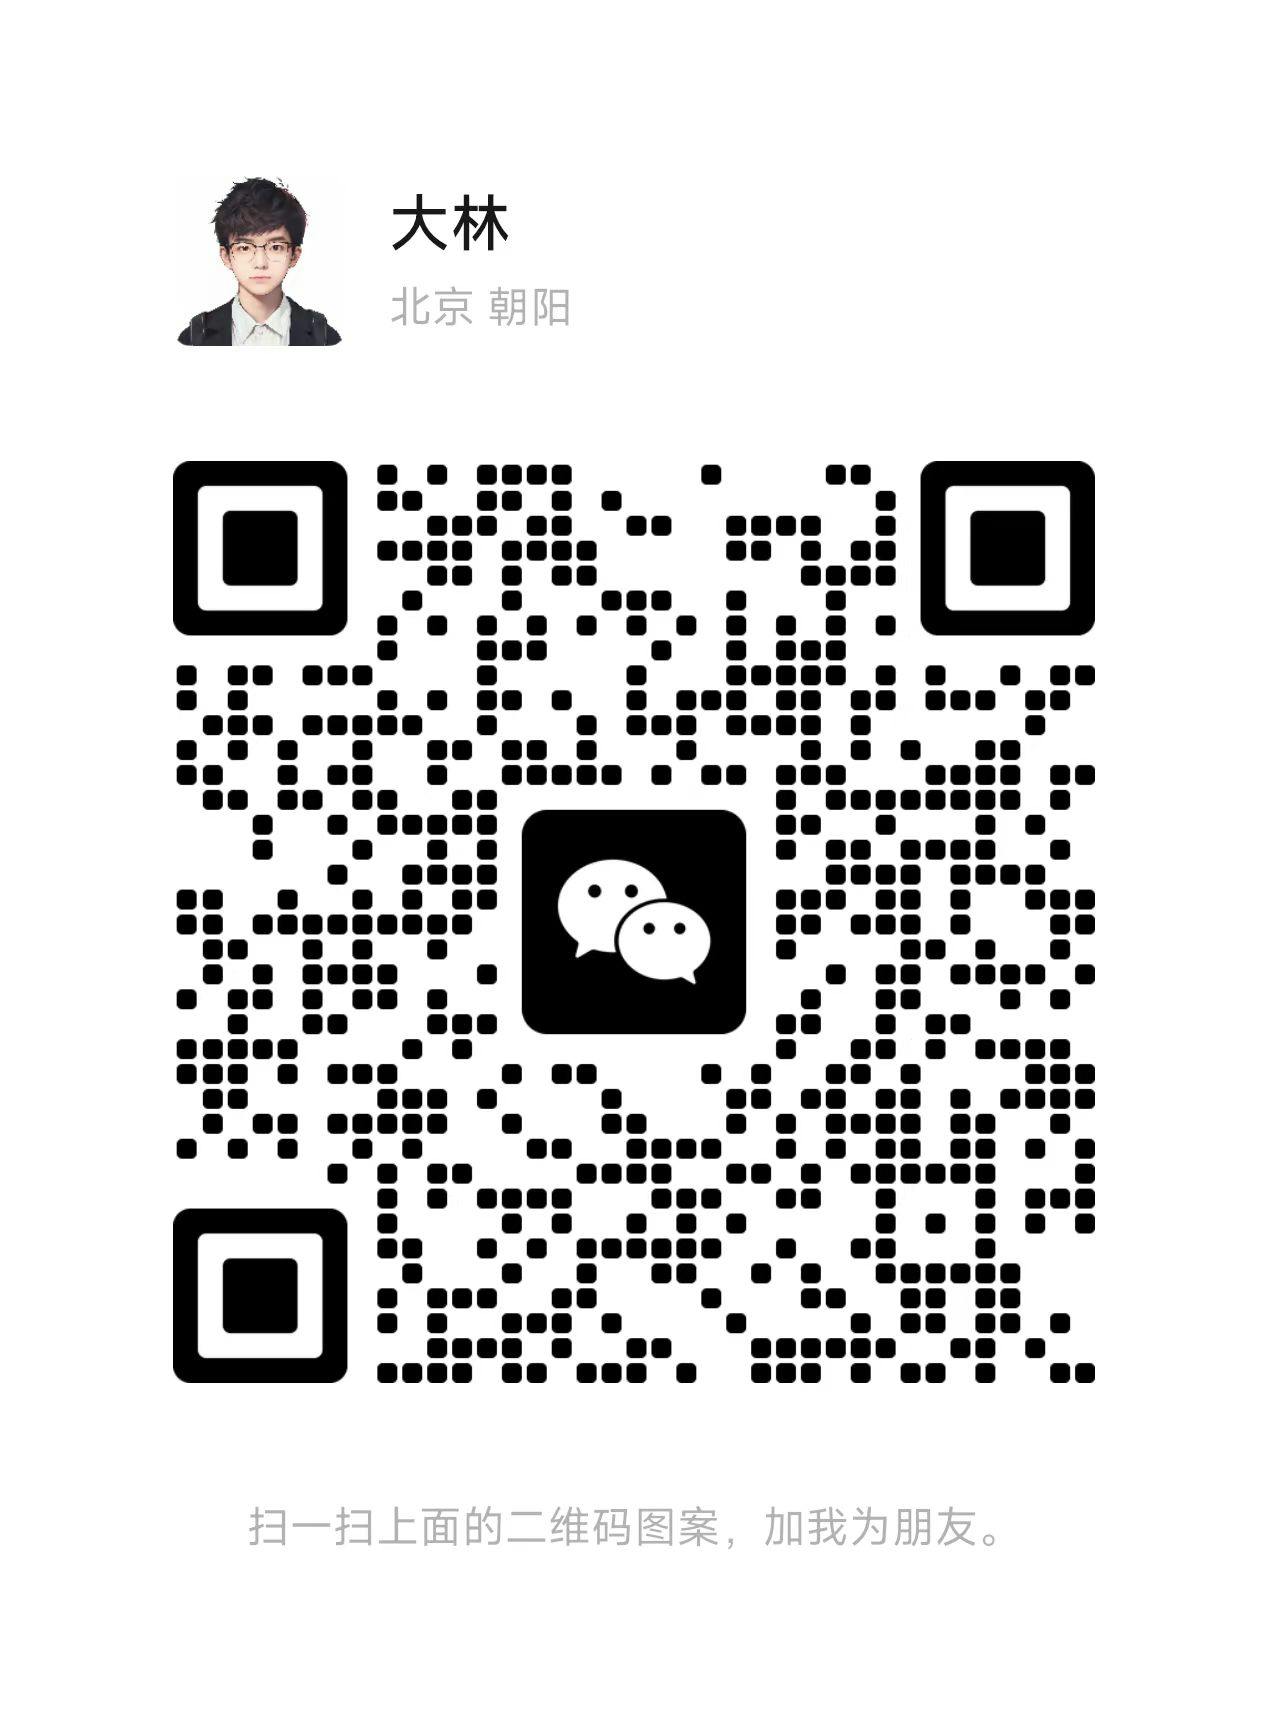 DaLin WeChat